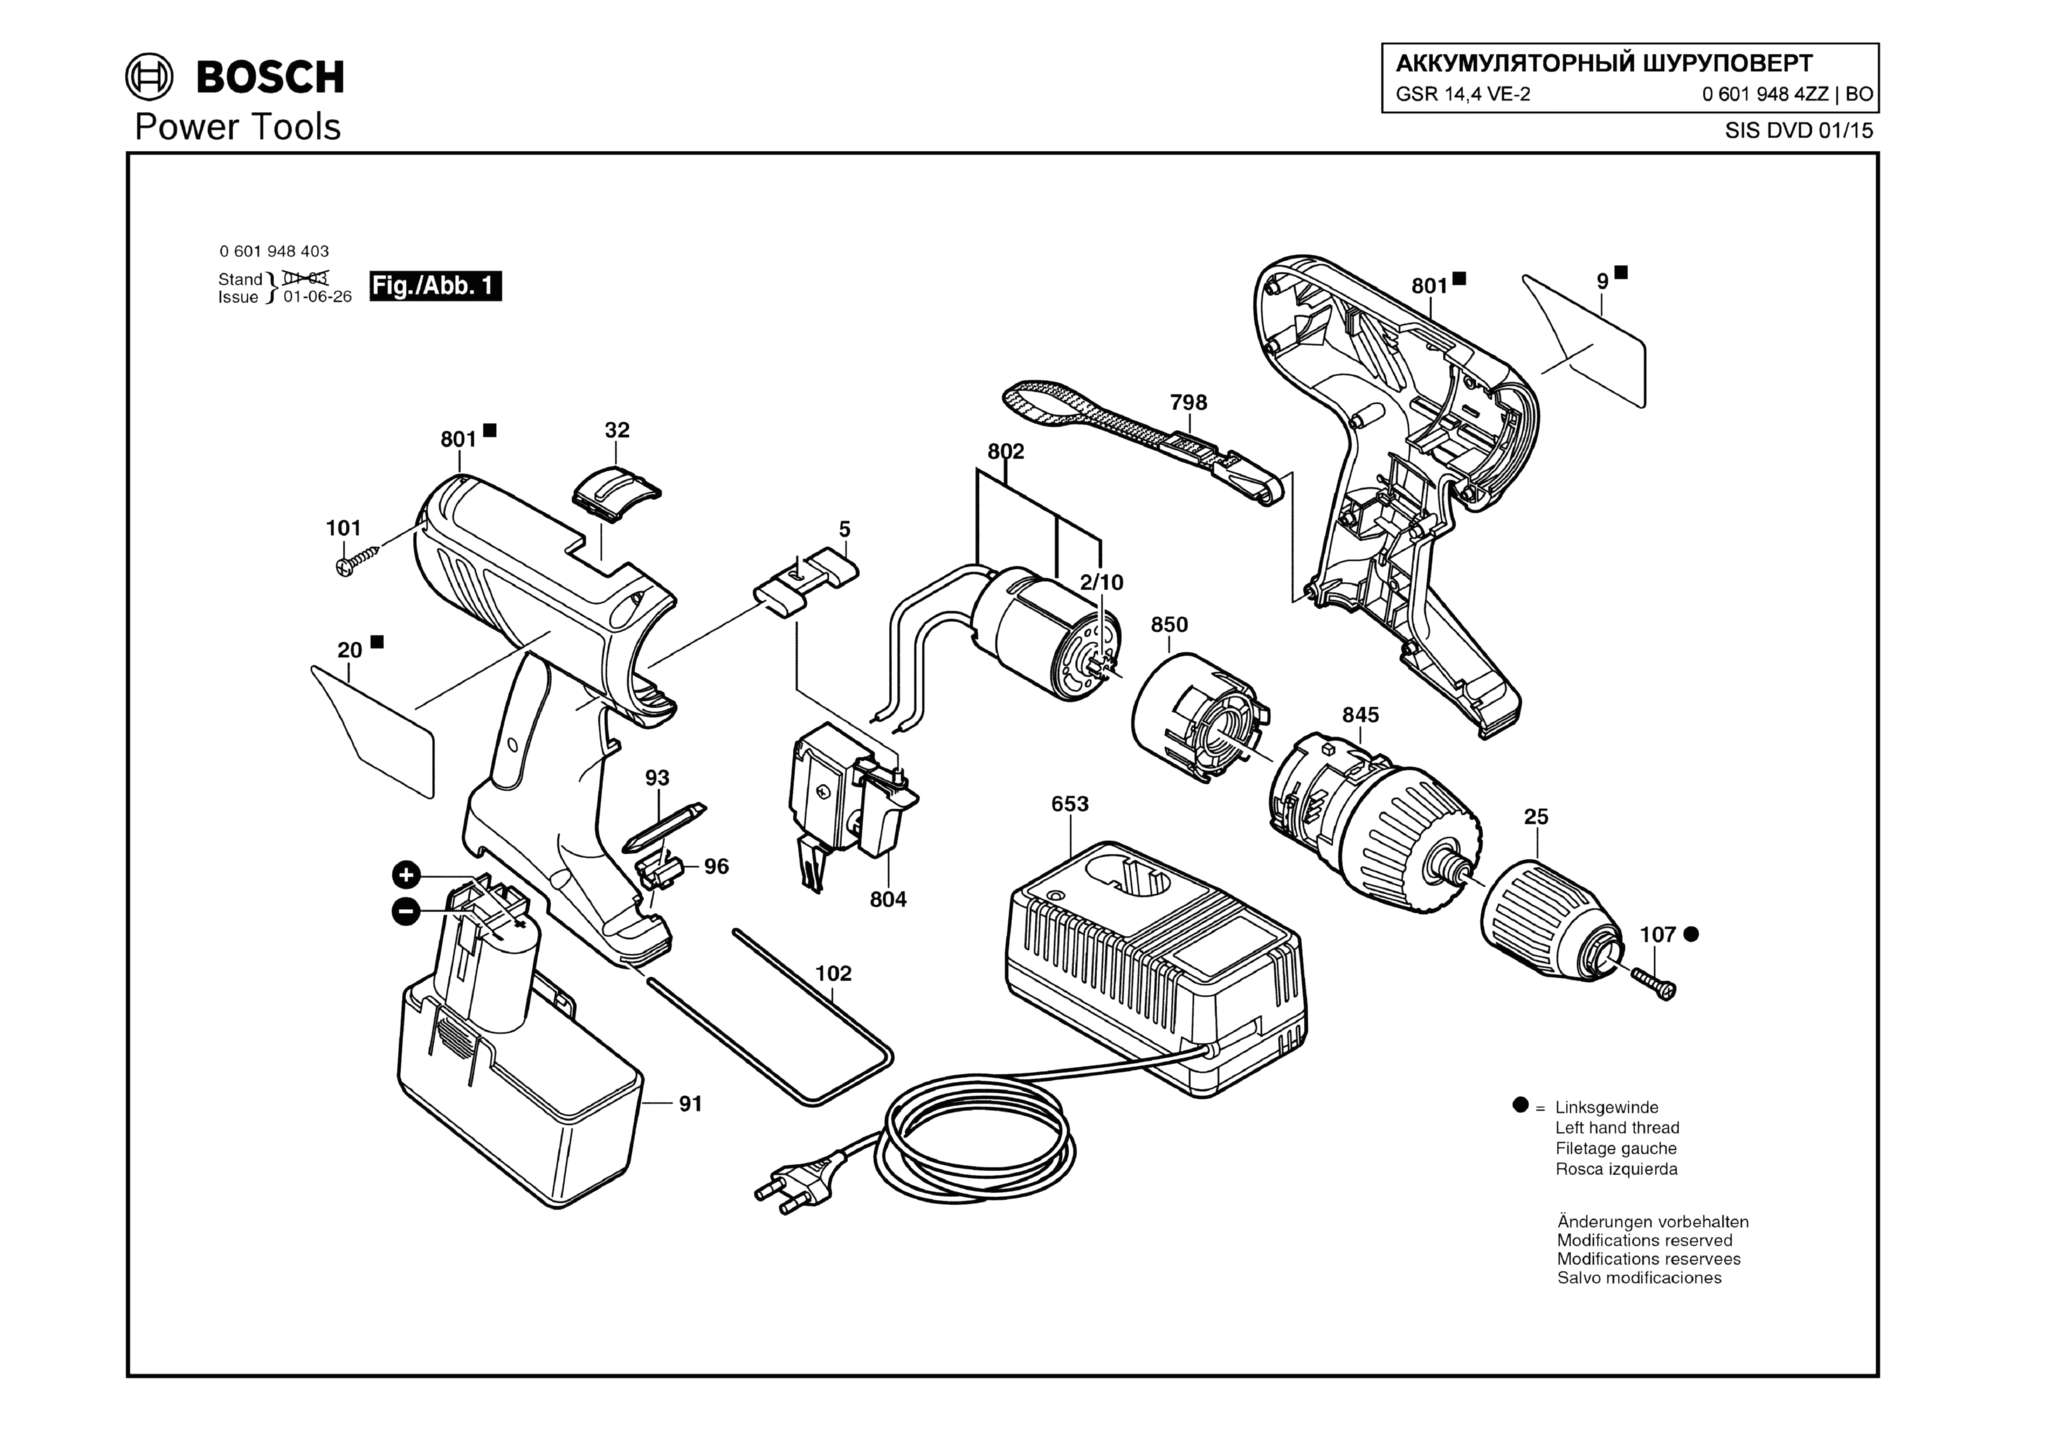 Запчасти, схема и деталировка Bosch GSR 14,4 VE-2 (ТИП 06019484ZZ)